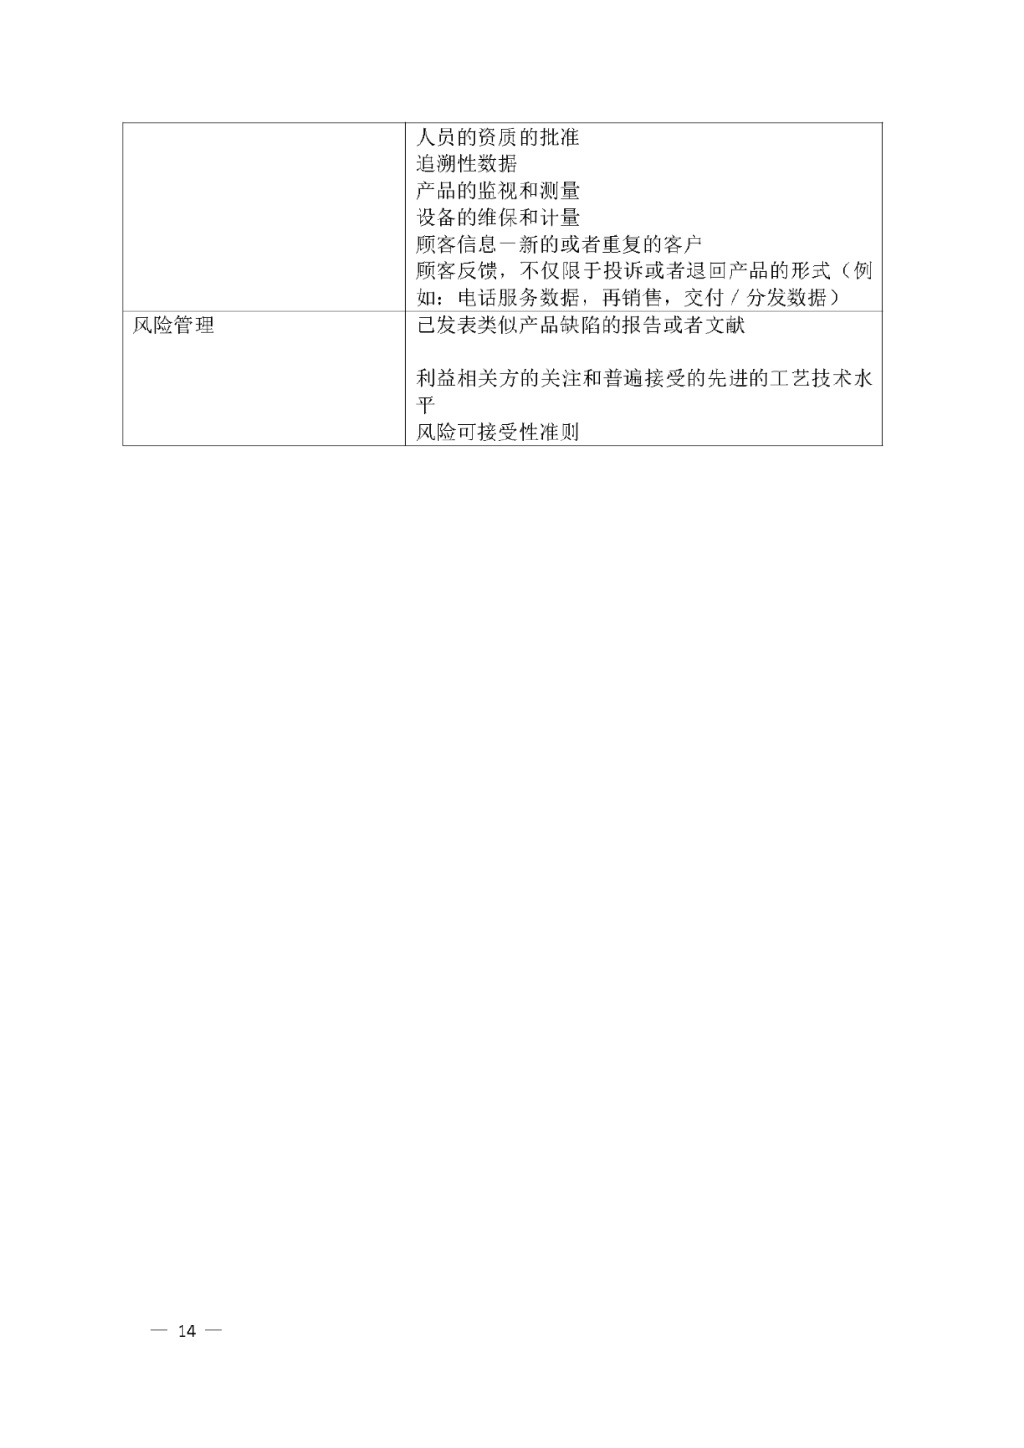 【安徽】发布医疗器械质量管理分析改进工作指南(图14)